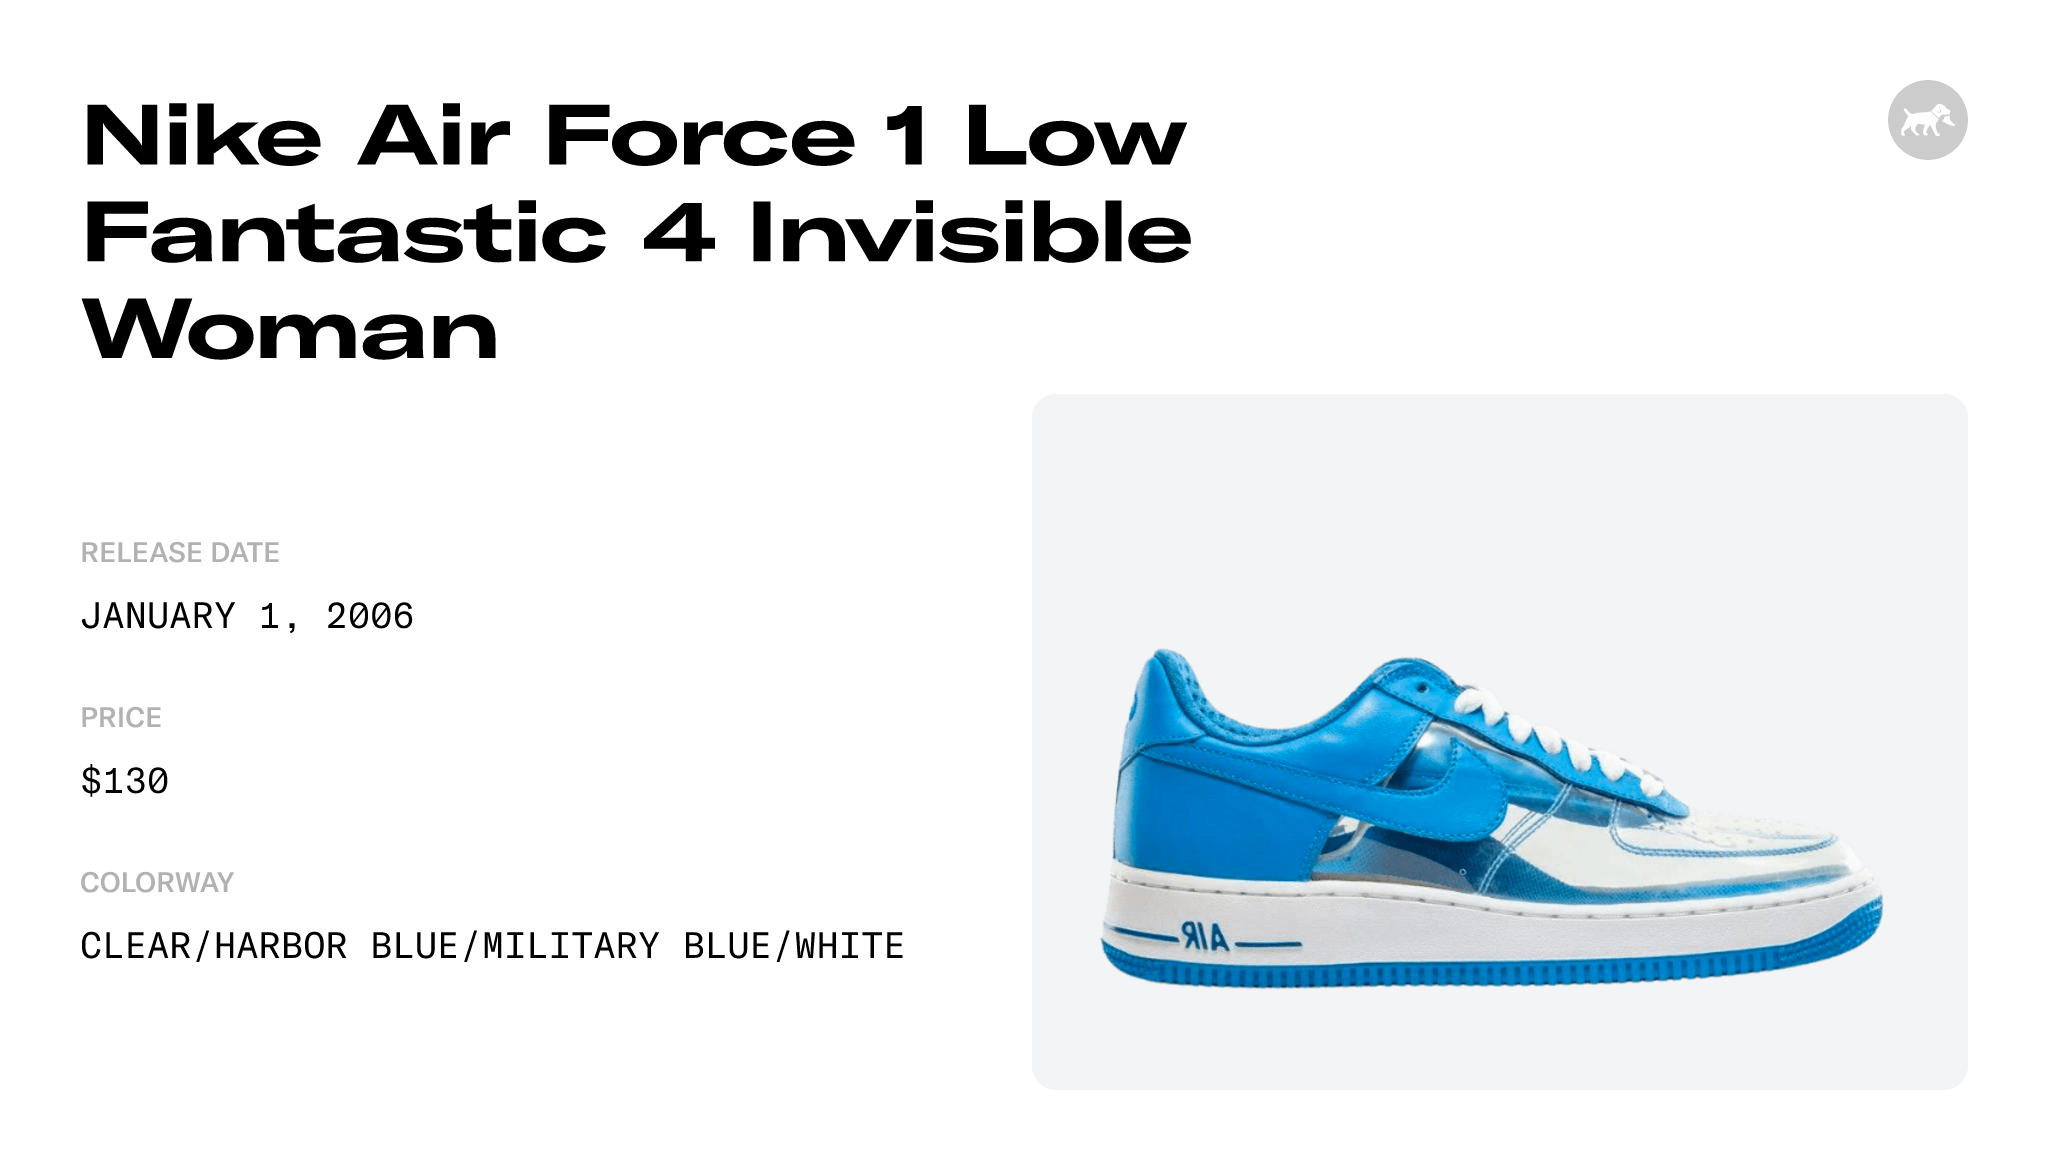 Nike Air Force 1 Premium Fantastic 4 Invisible Woman